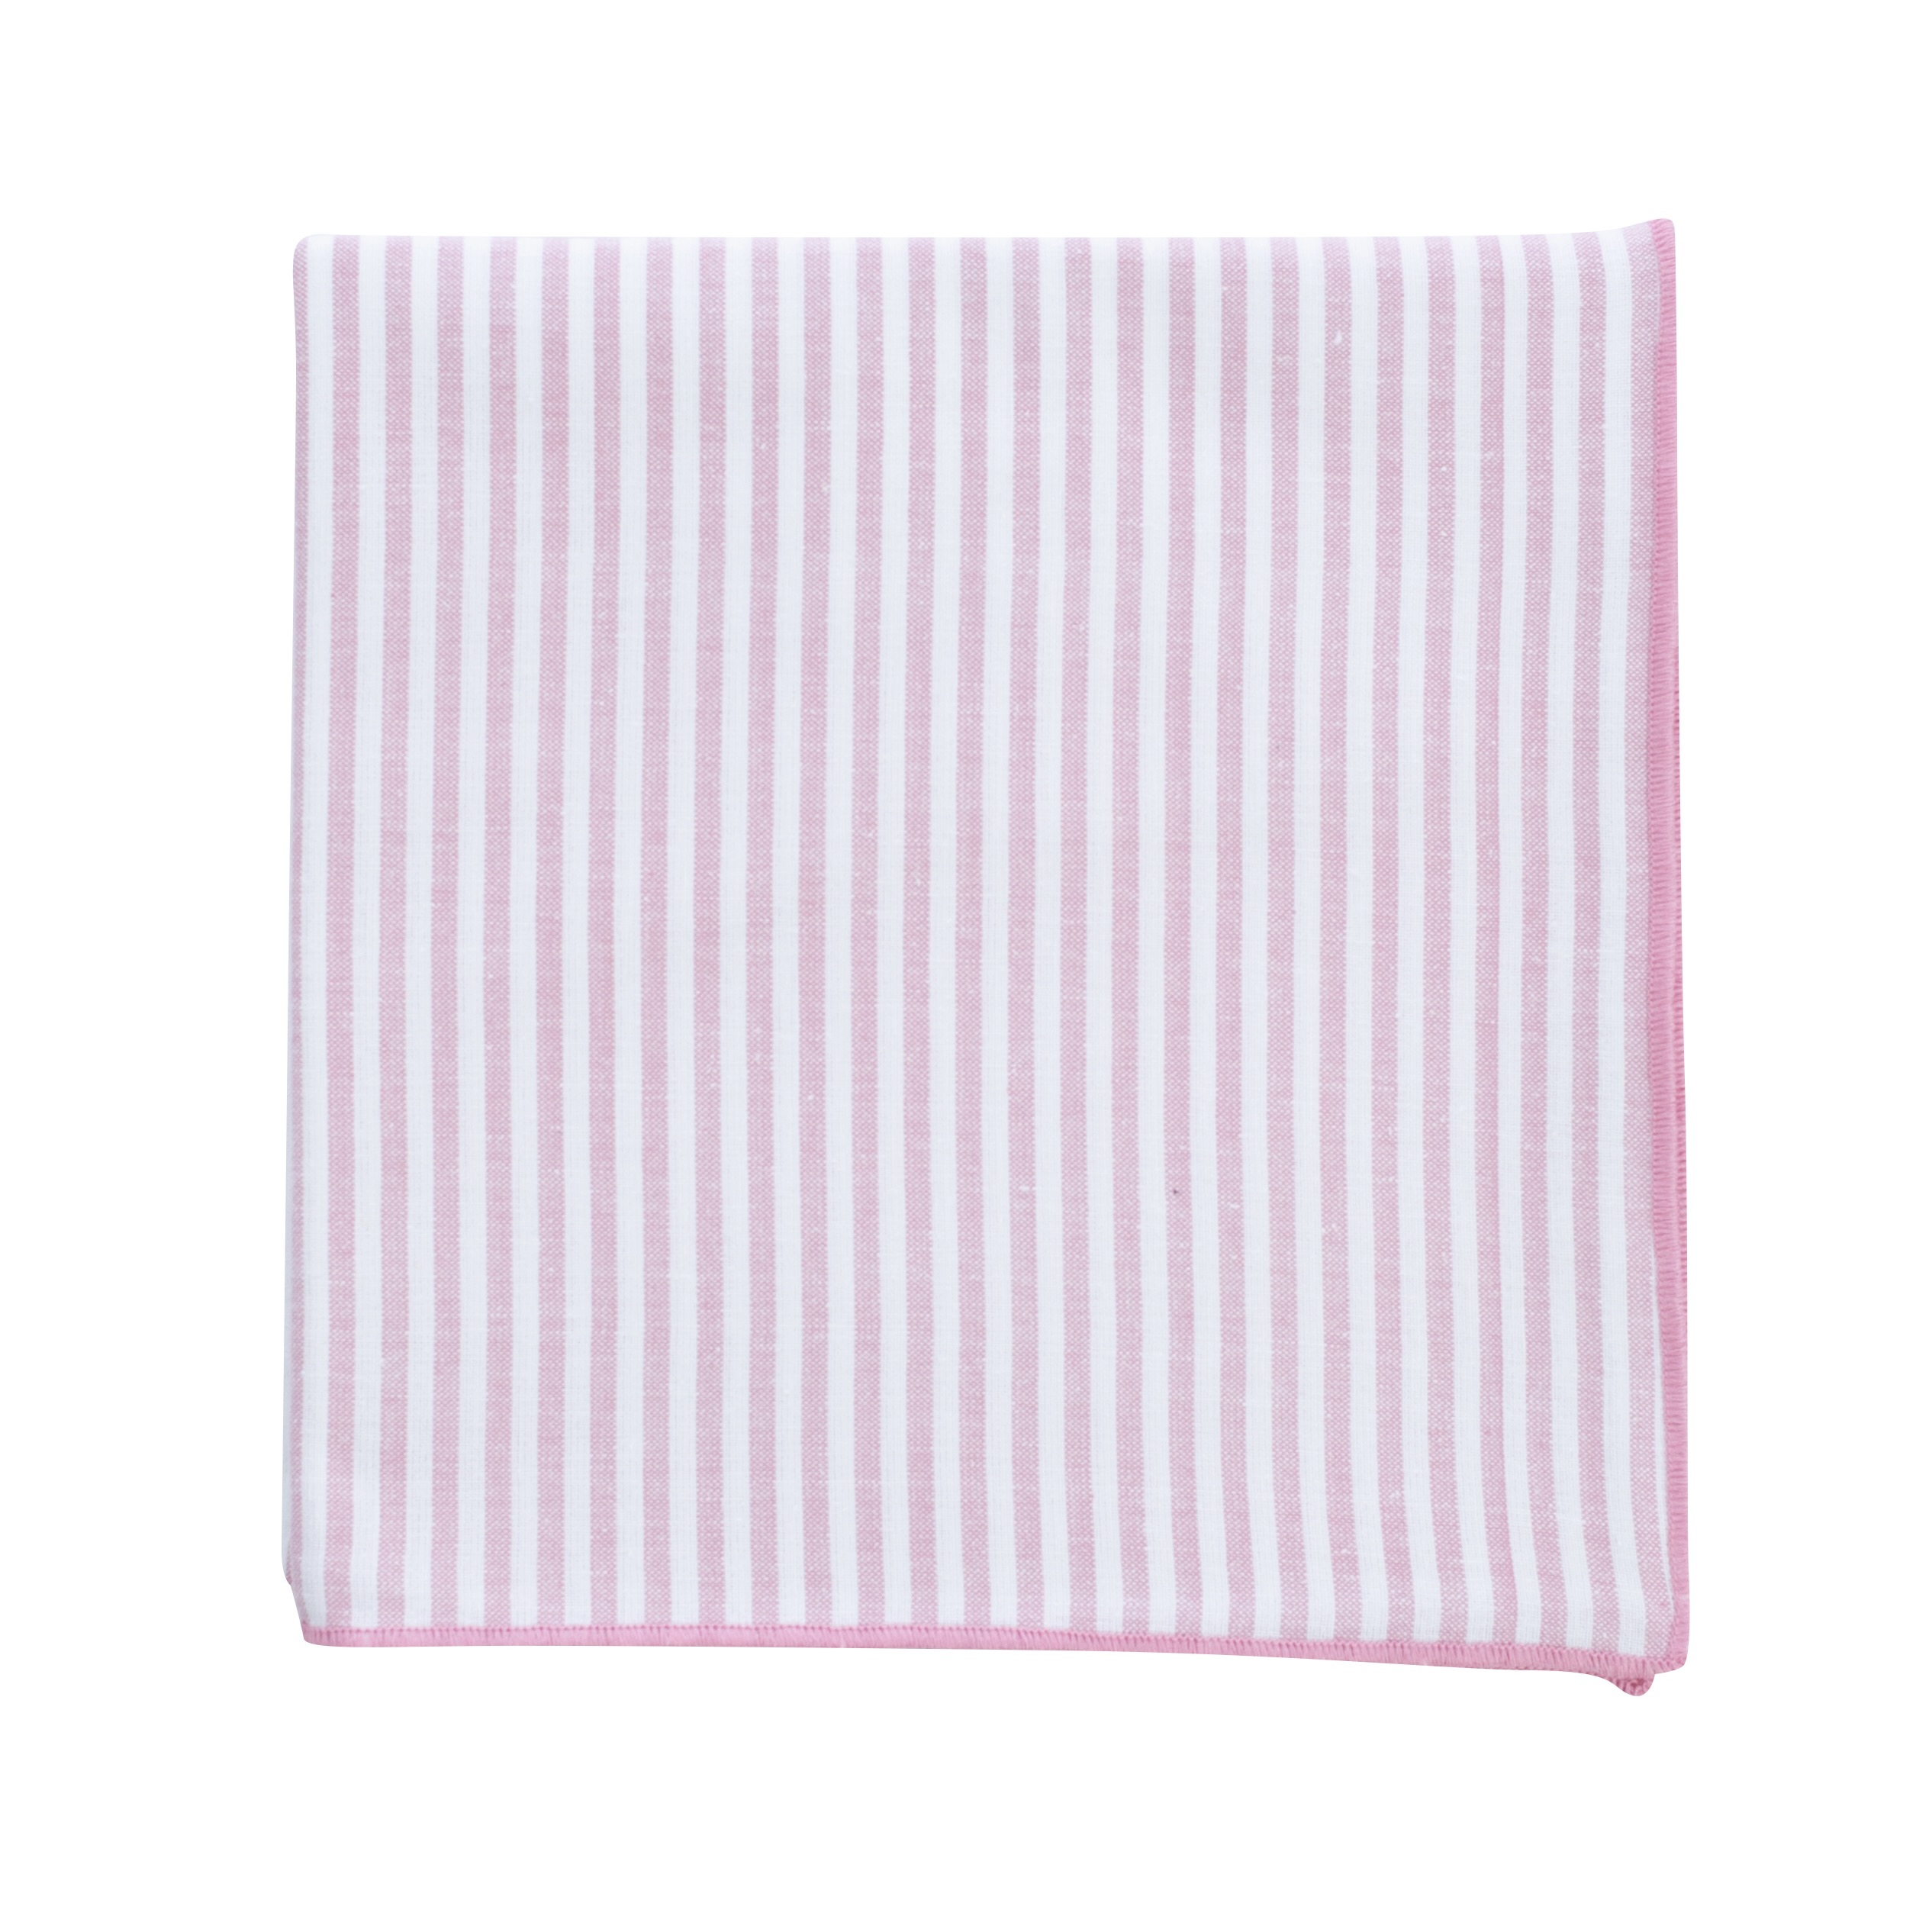 Elli Tischdecke 100 x 100 cm rosa-weiß, Streifen 0,5 cm  